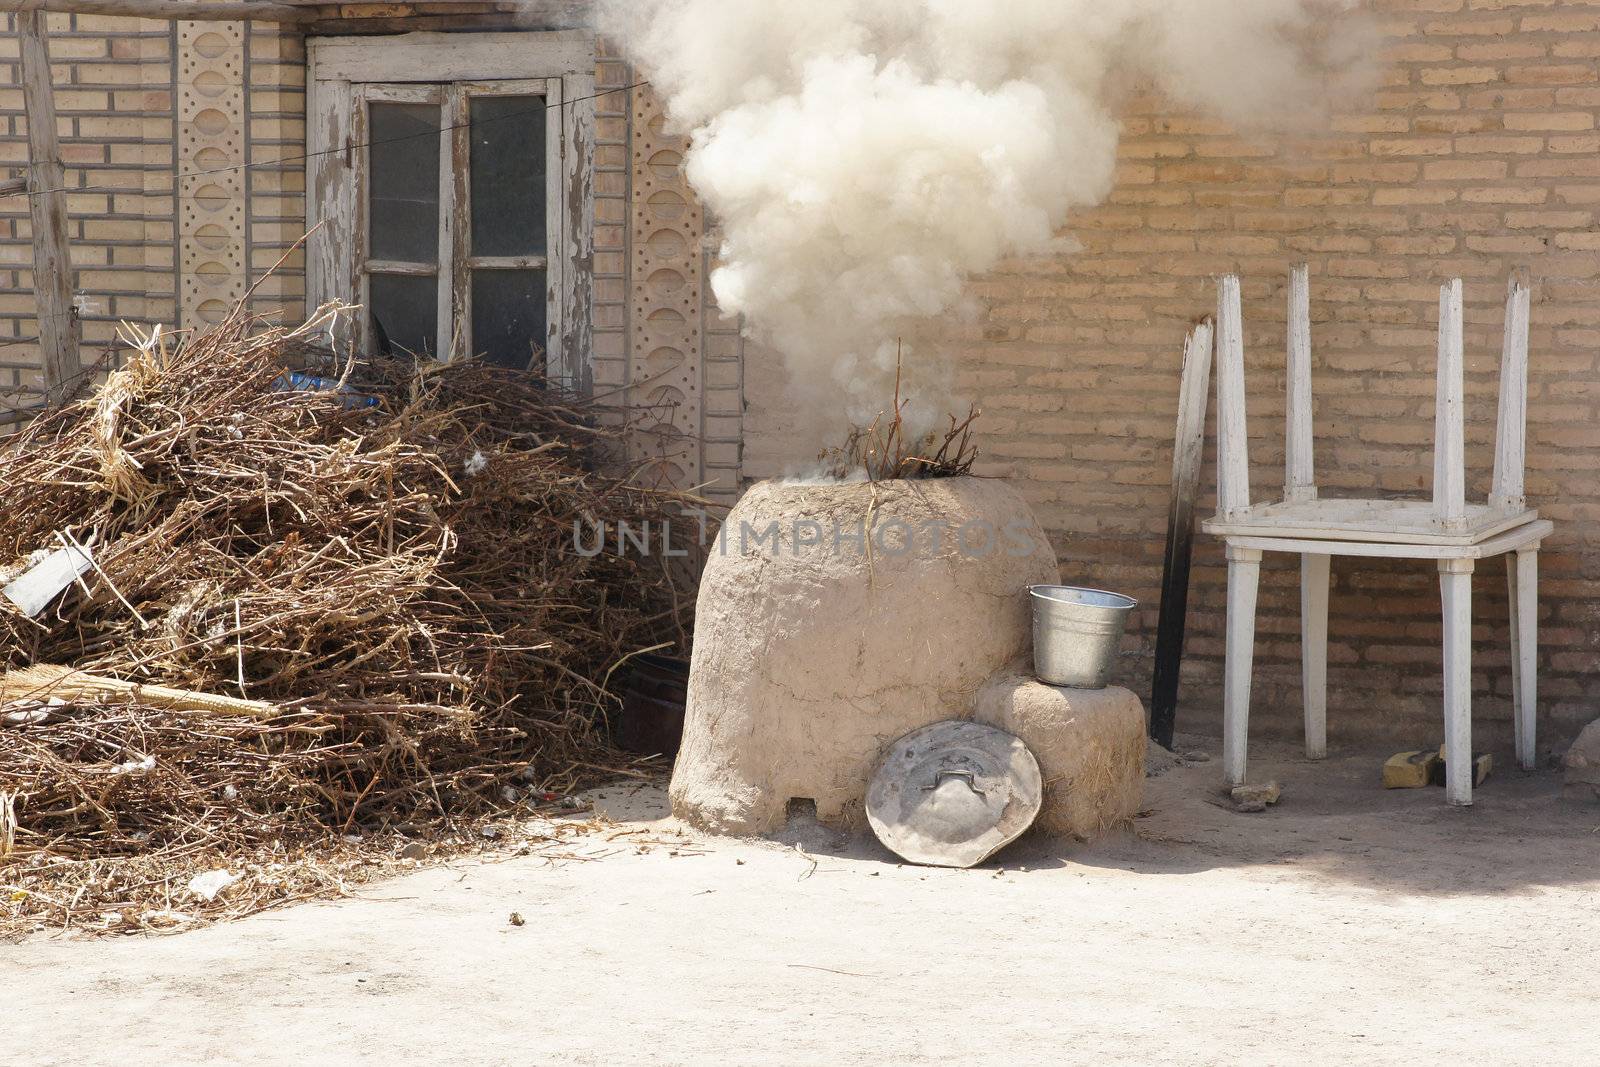 Traditional clay stoves, ancient city of Khiva, Uzbekistan